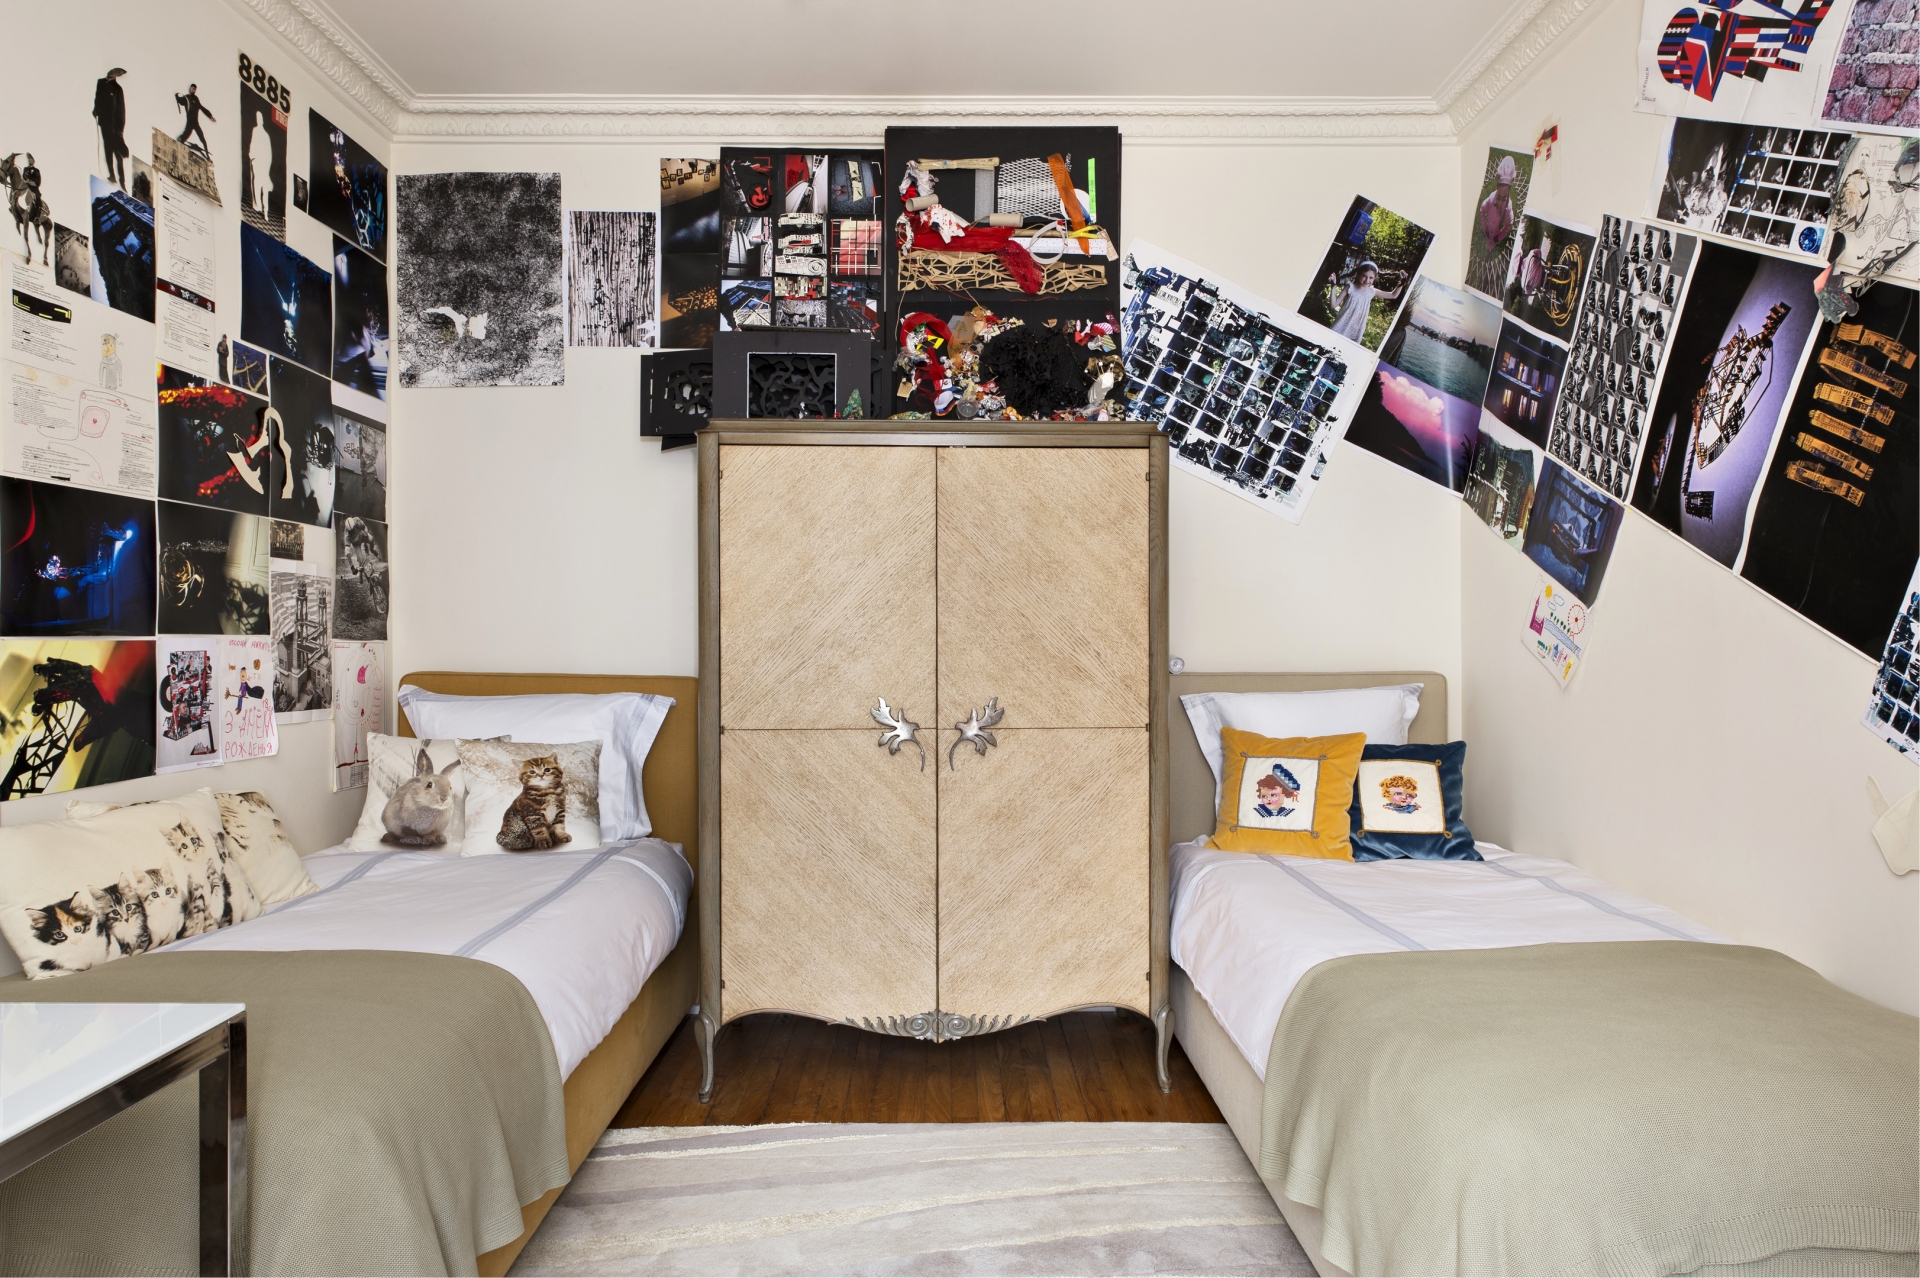 Phòng ngủ của hai anh em trai với 2 chiếc giường nhỏ bố trí đối xứng nhau, chính giữa là chiếc tủ lưu trữ kiểu dáng cổ điển. Những bức ảnh ghép trên tường là tác phẩm của nhà thiết kế đồ họa Nikita Sologubovsky.